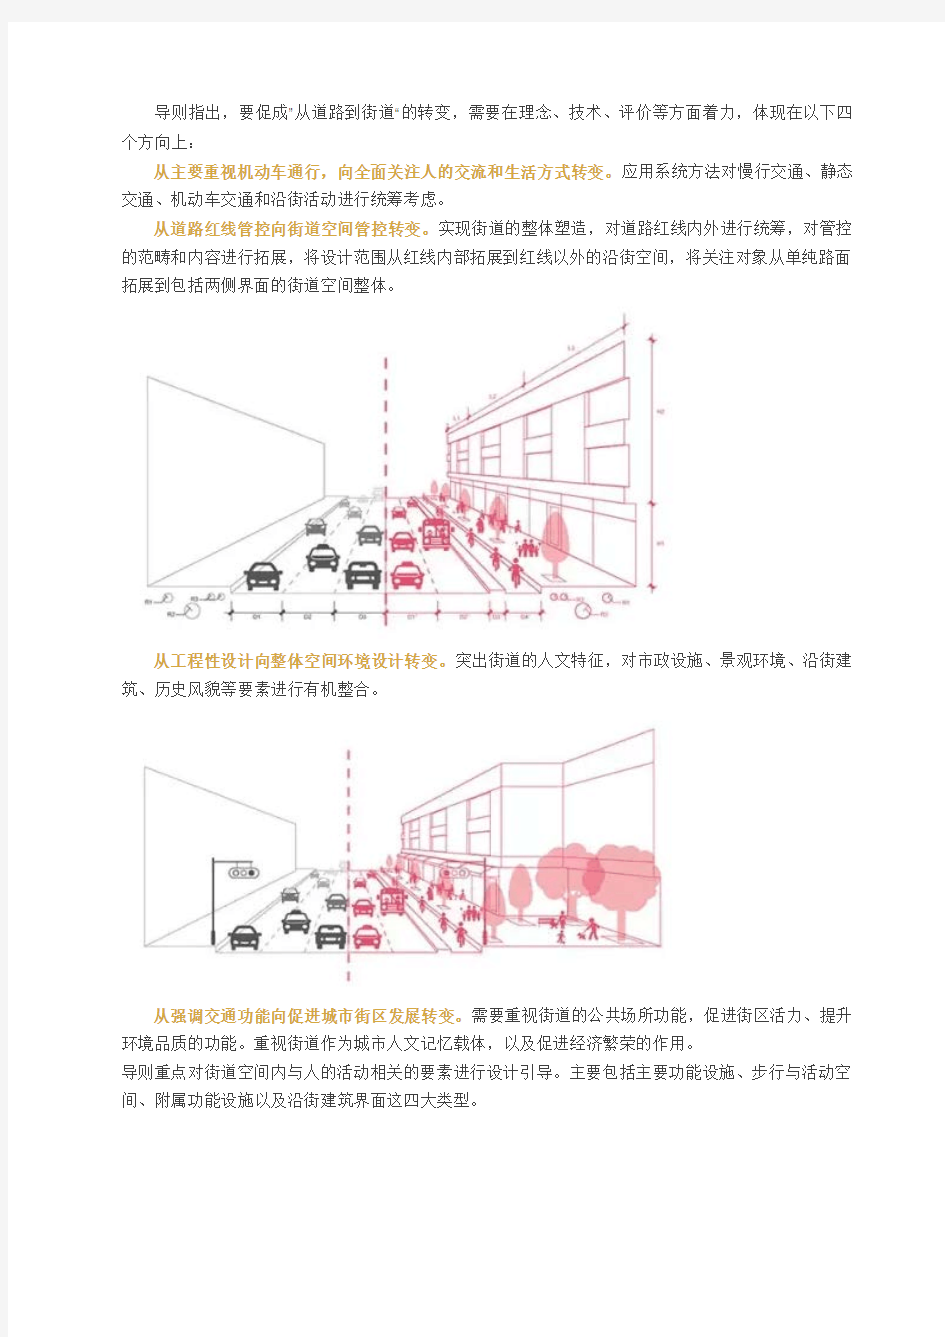 上海市街道设计导则 2016.06